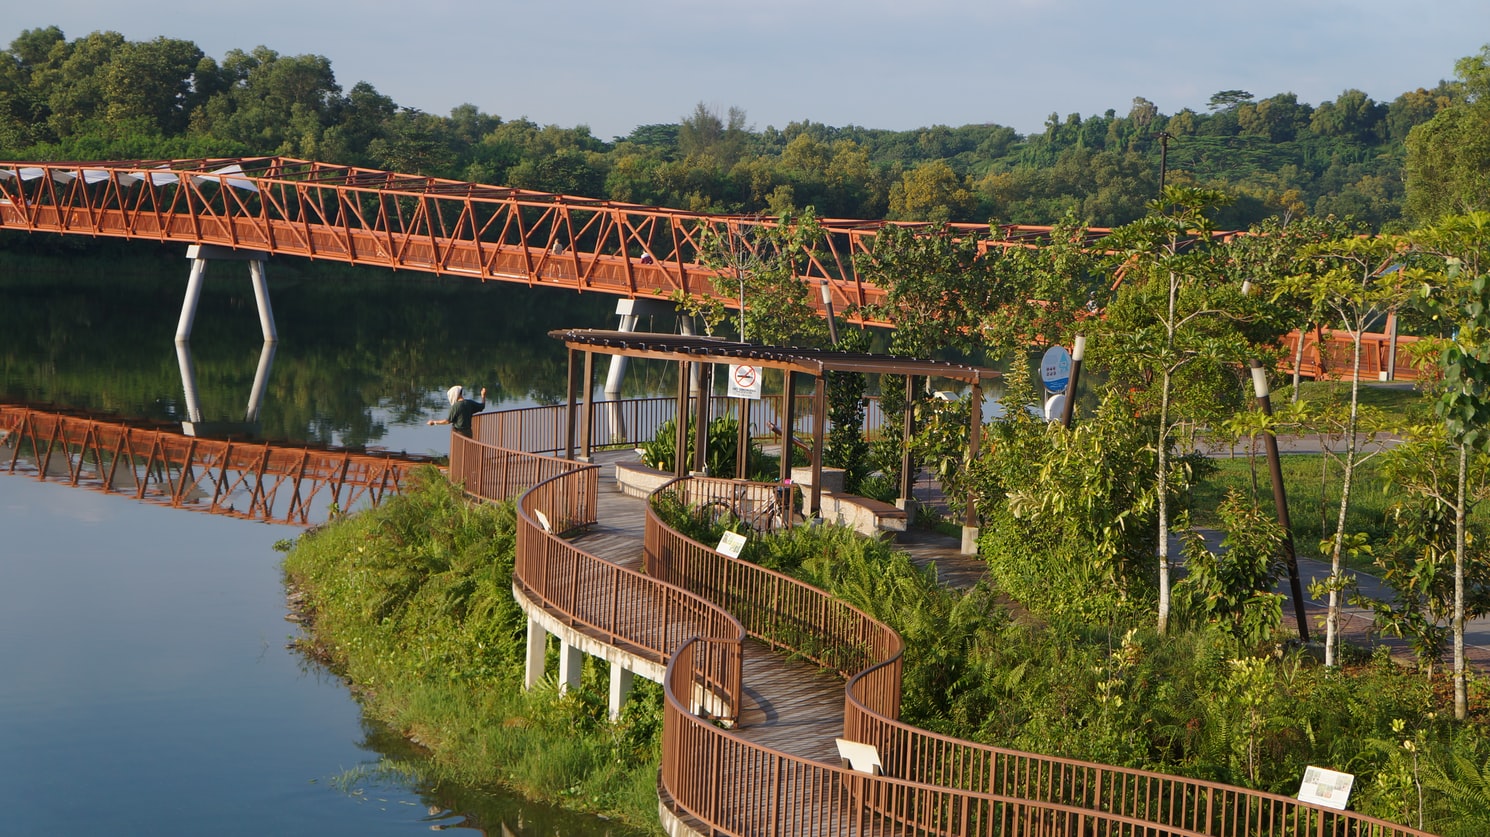 expat life in singapore - punggol waterway park